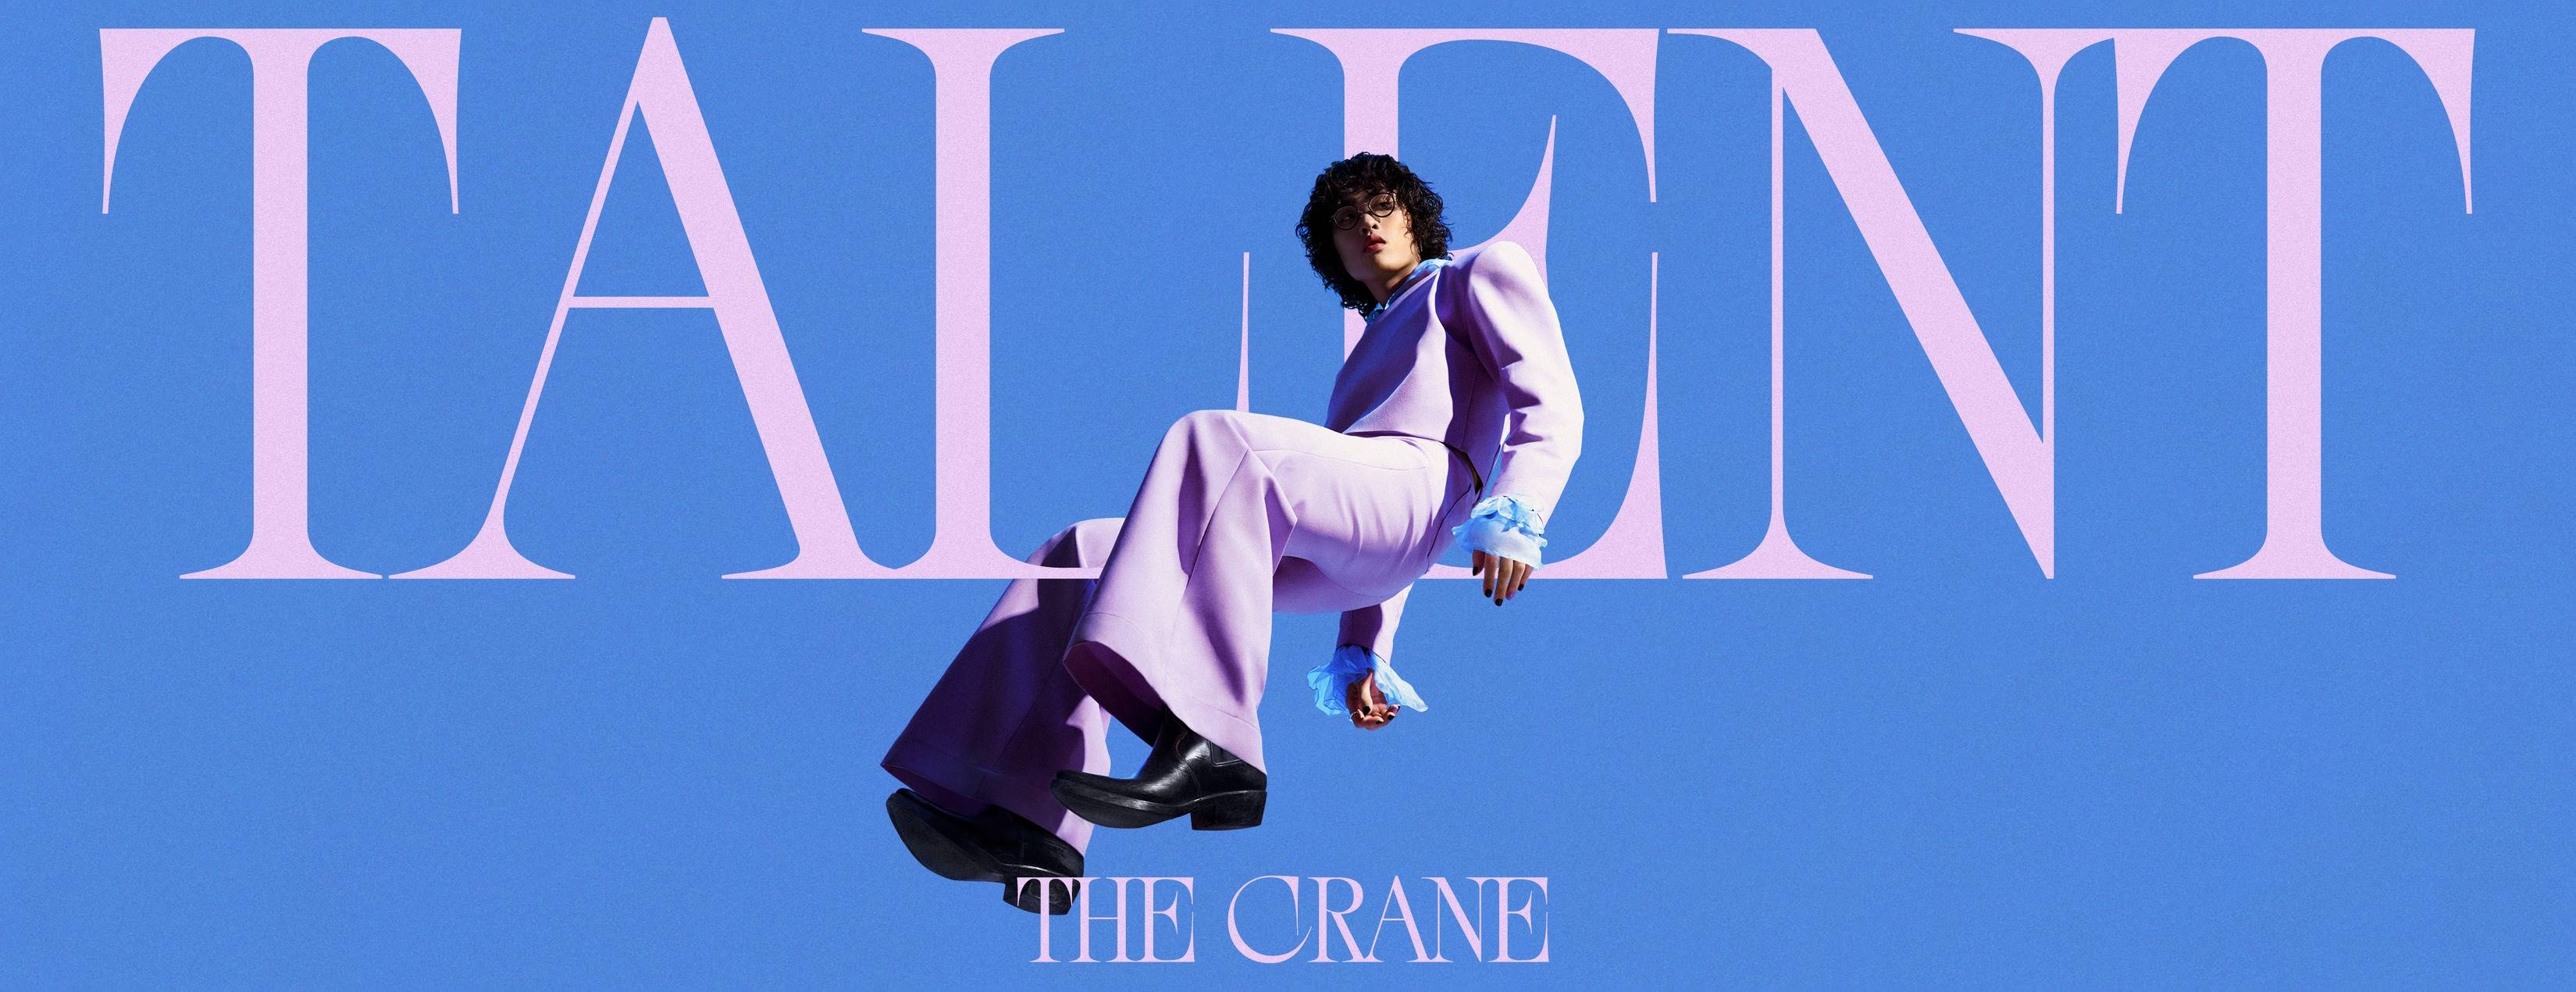 鶴 The Crane《TALENT》獲得第34屆金曲獎最佳新人獎、最佳華語男歌手獎入圍肯定。